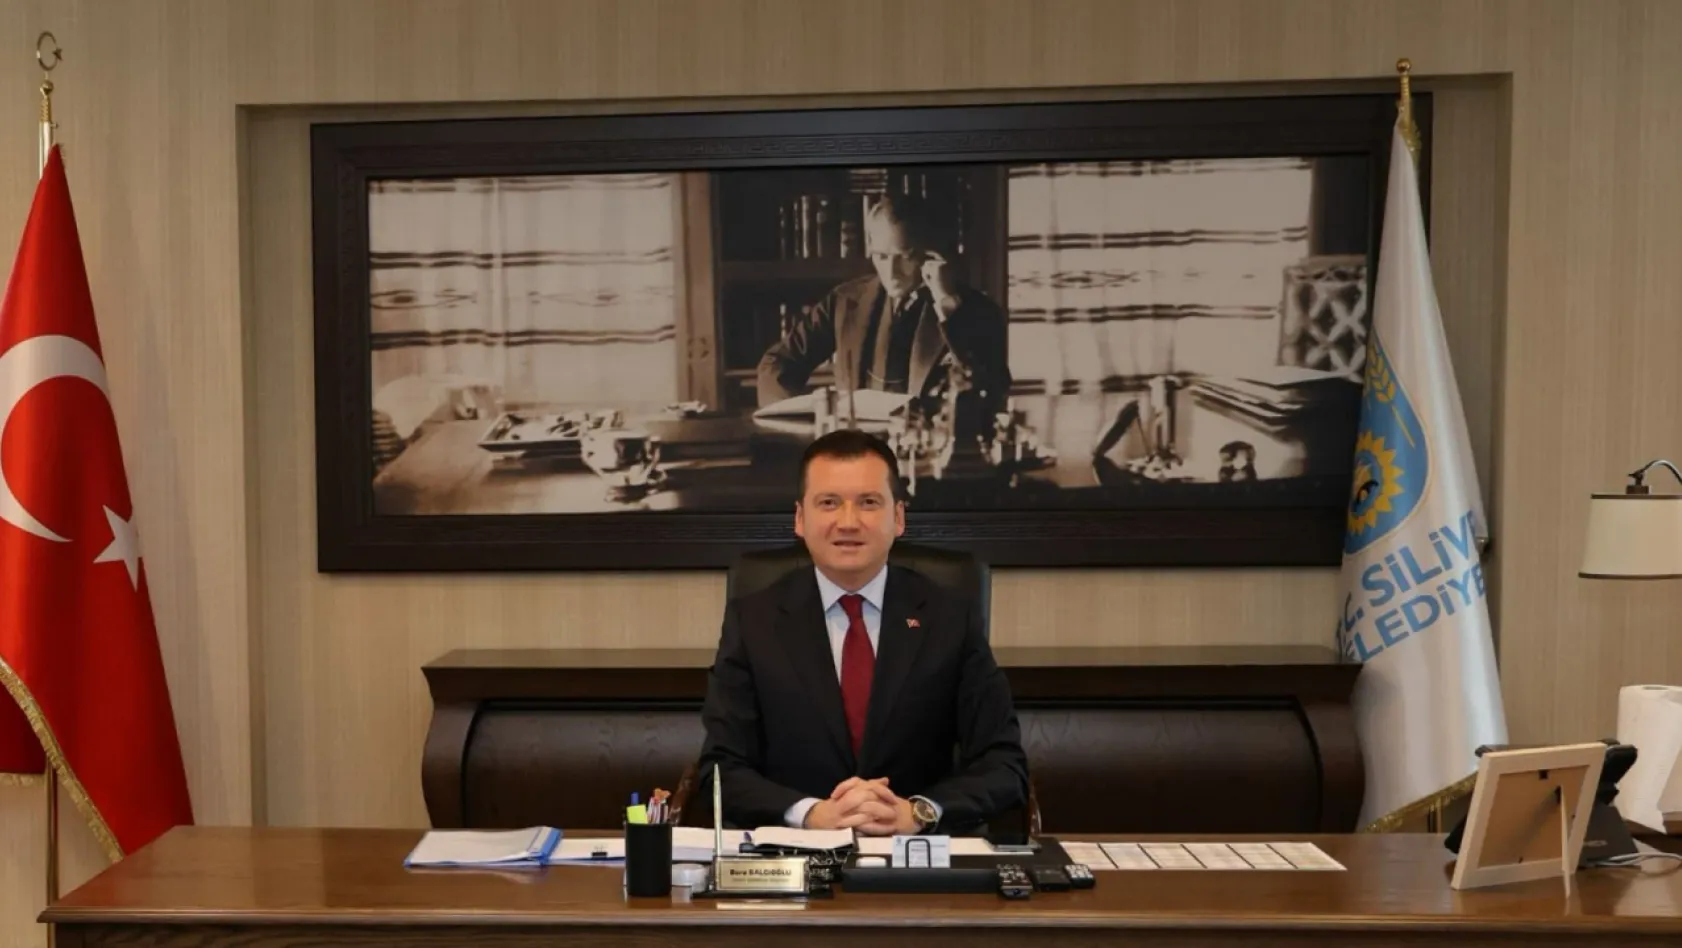 Silivri Belediye Başkanı Bora Balcıoğlu Yeni Yönetim Kadrosunu Oluşturdu